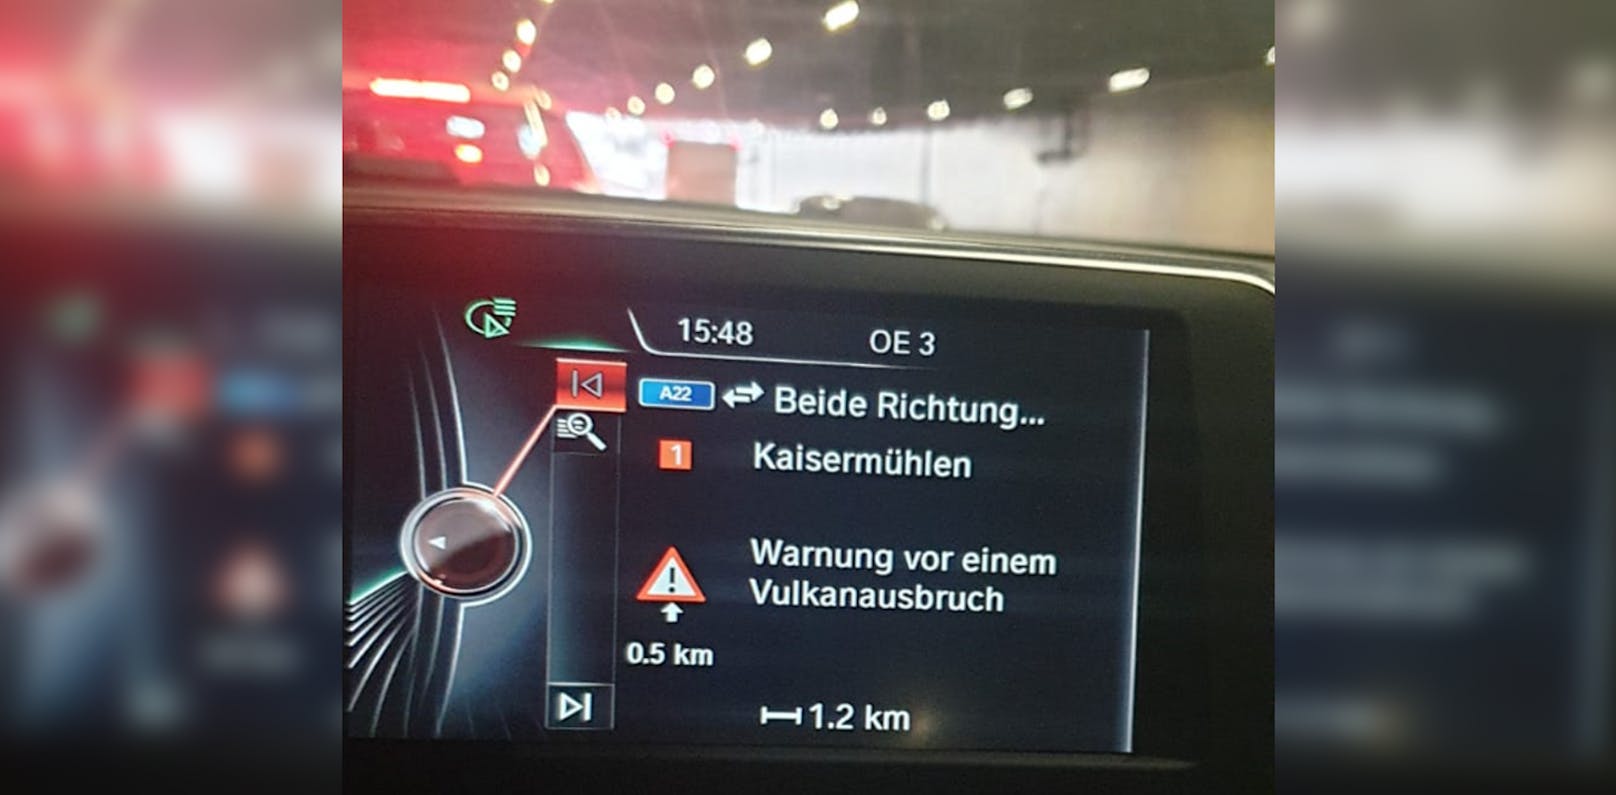 Ein Wiener bekam eine sehr kuriose Warnung von seinem Navigationssystem